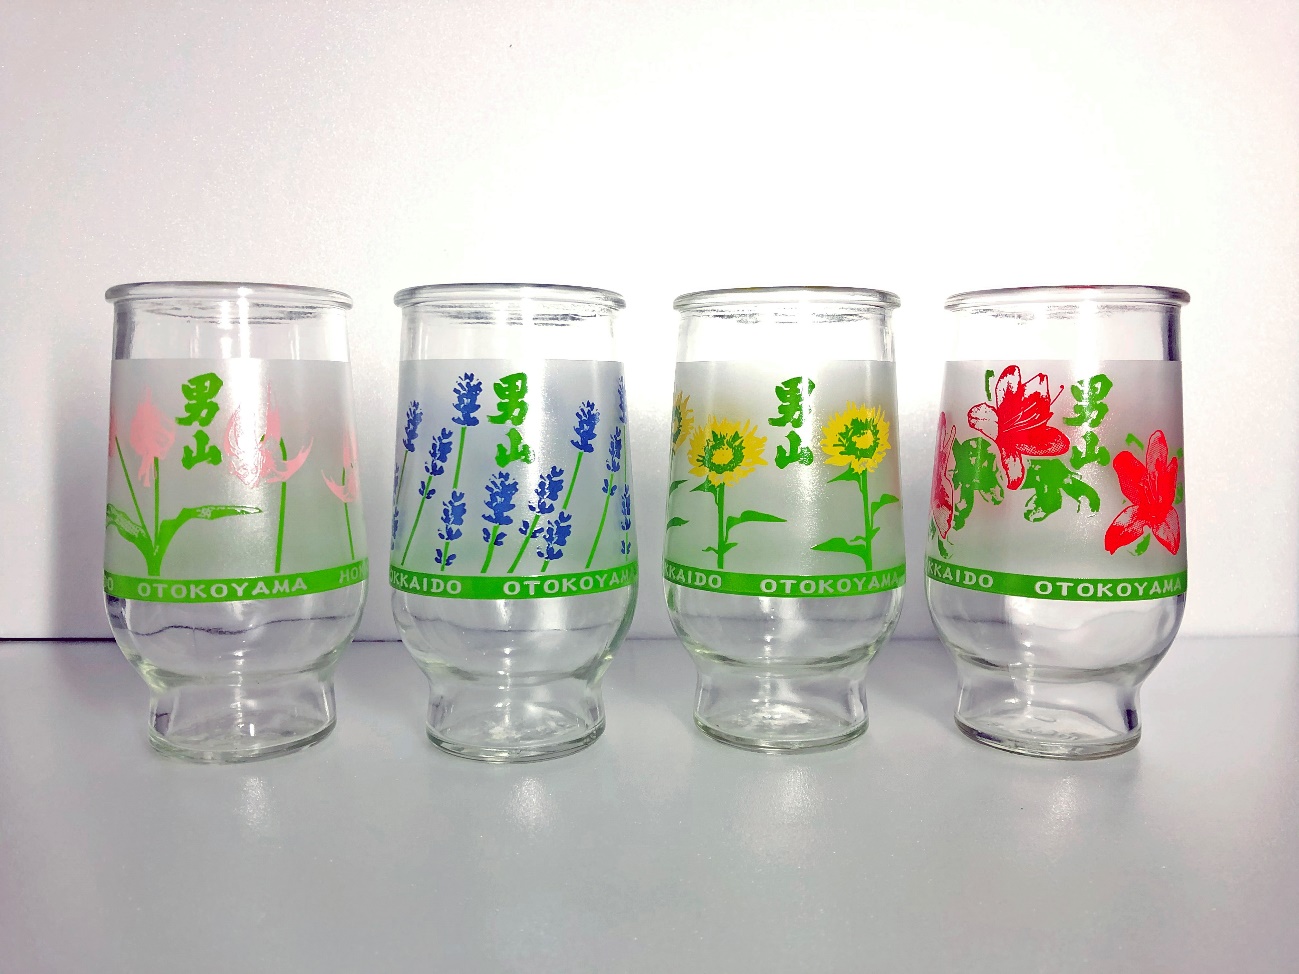 無料】フラワーカップの空瓶を配布いたします。 | 北海道旭川の地酒・男山が届ける日本酒メディアサイト